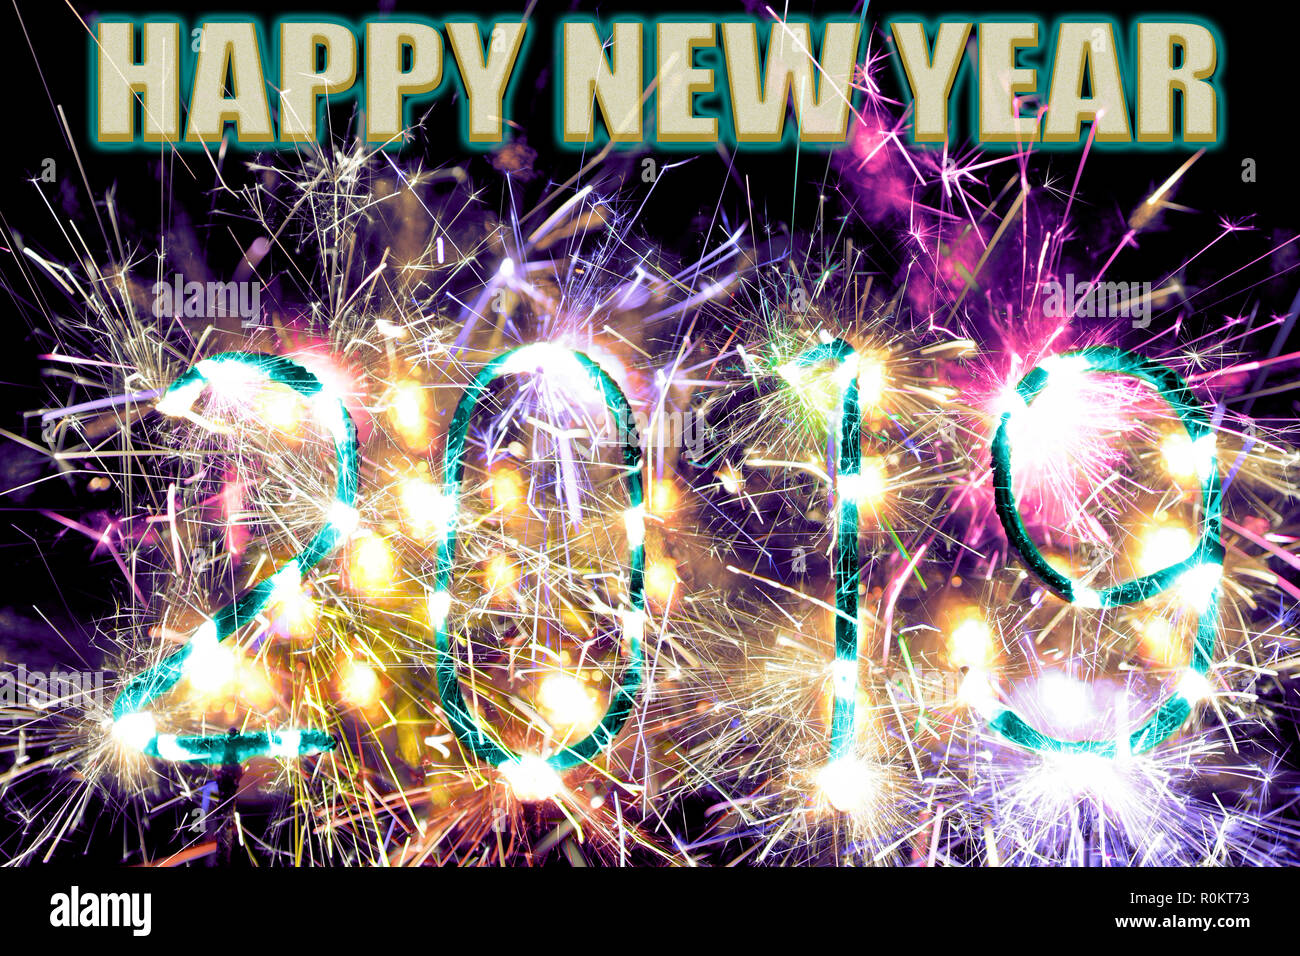 Feliz Año Nuevo 2019. Bengala fireworks número 2019 quema con el texto 'Feliz Año Nuevo'. Vibrante, colorida y llena de energía. Foto de stock